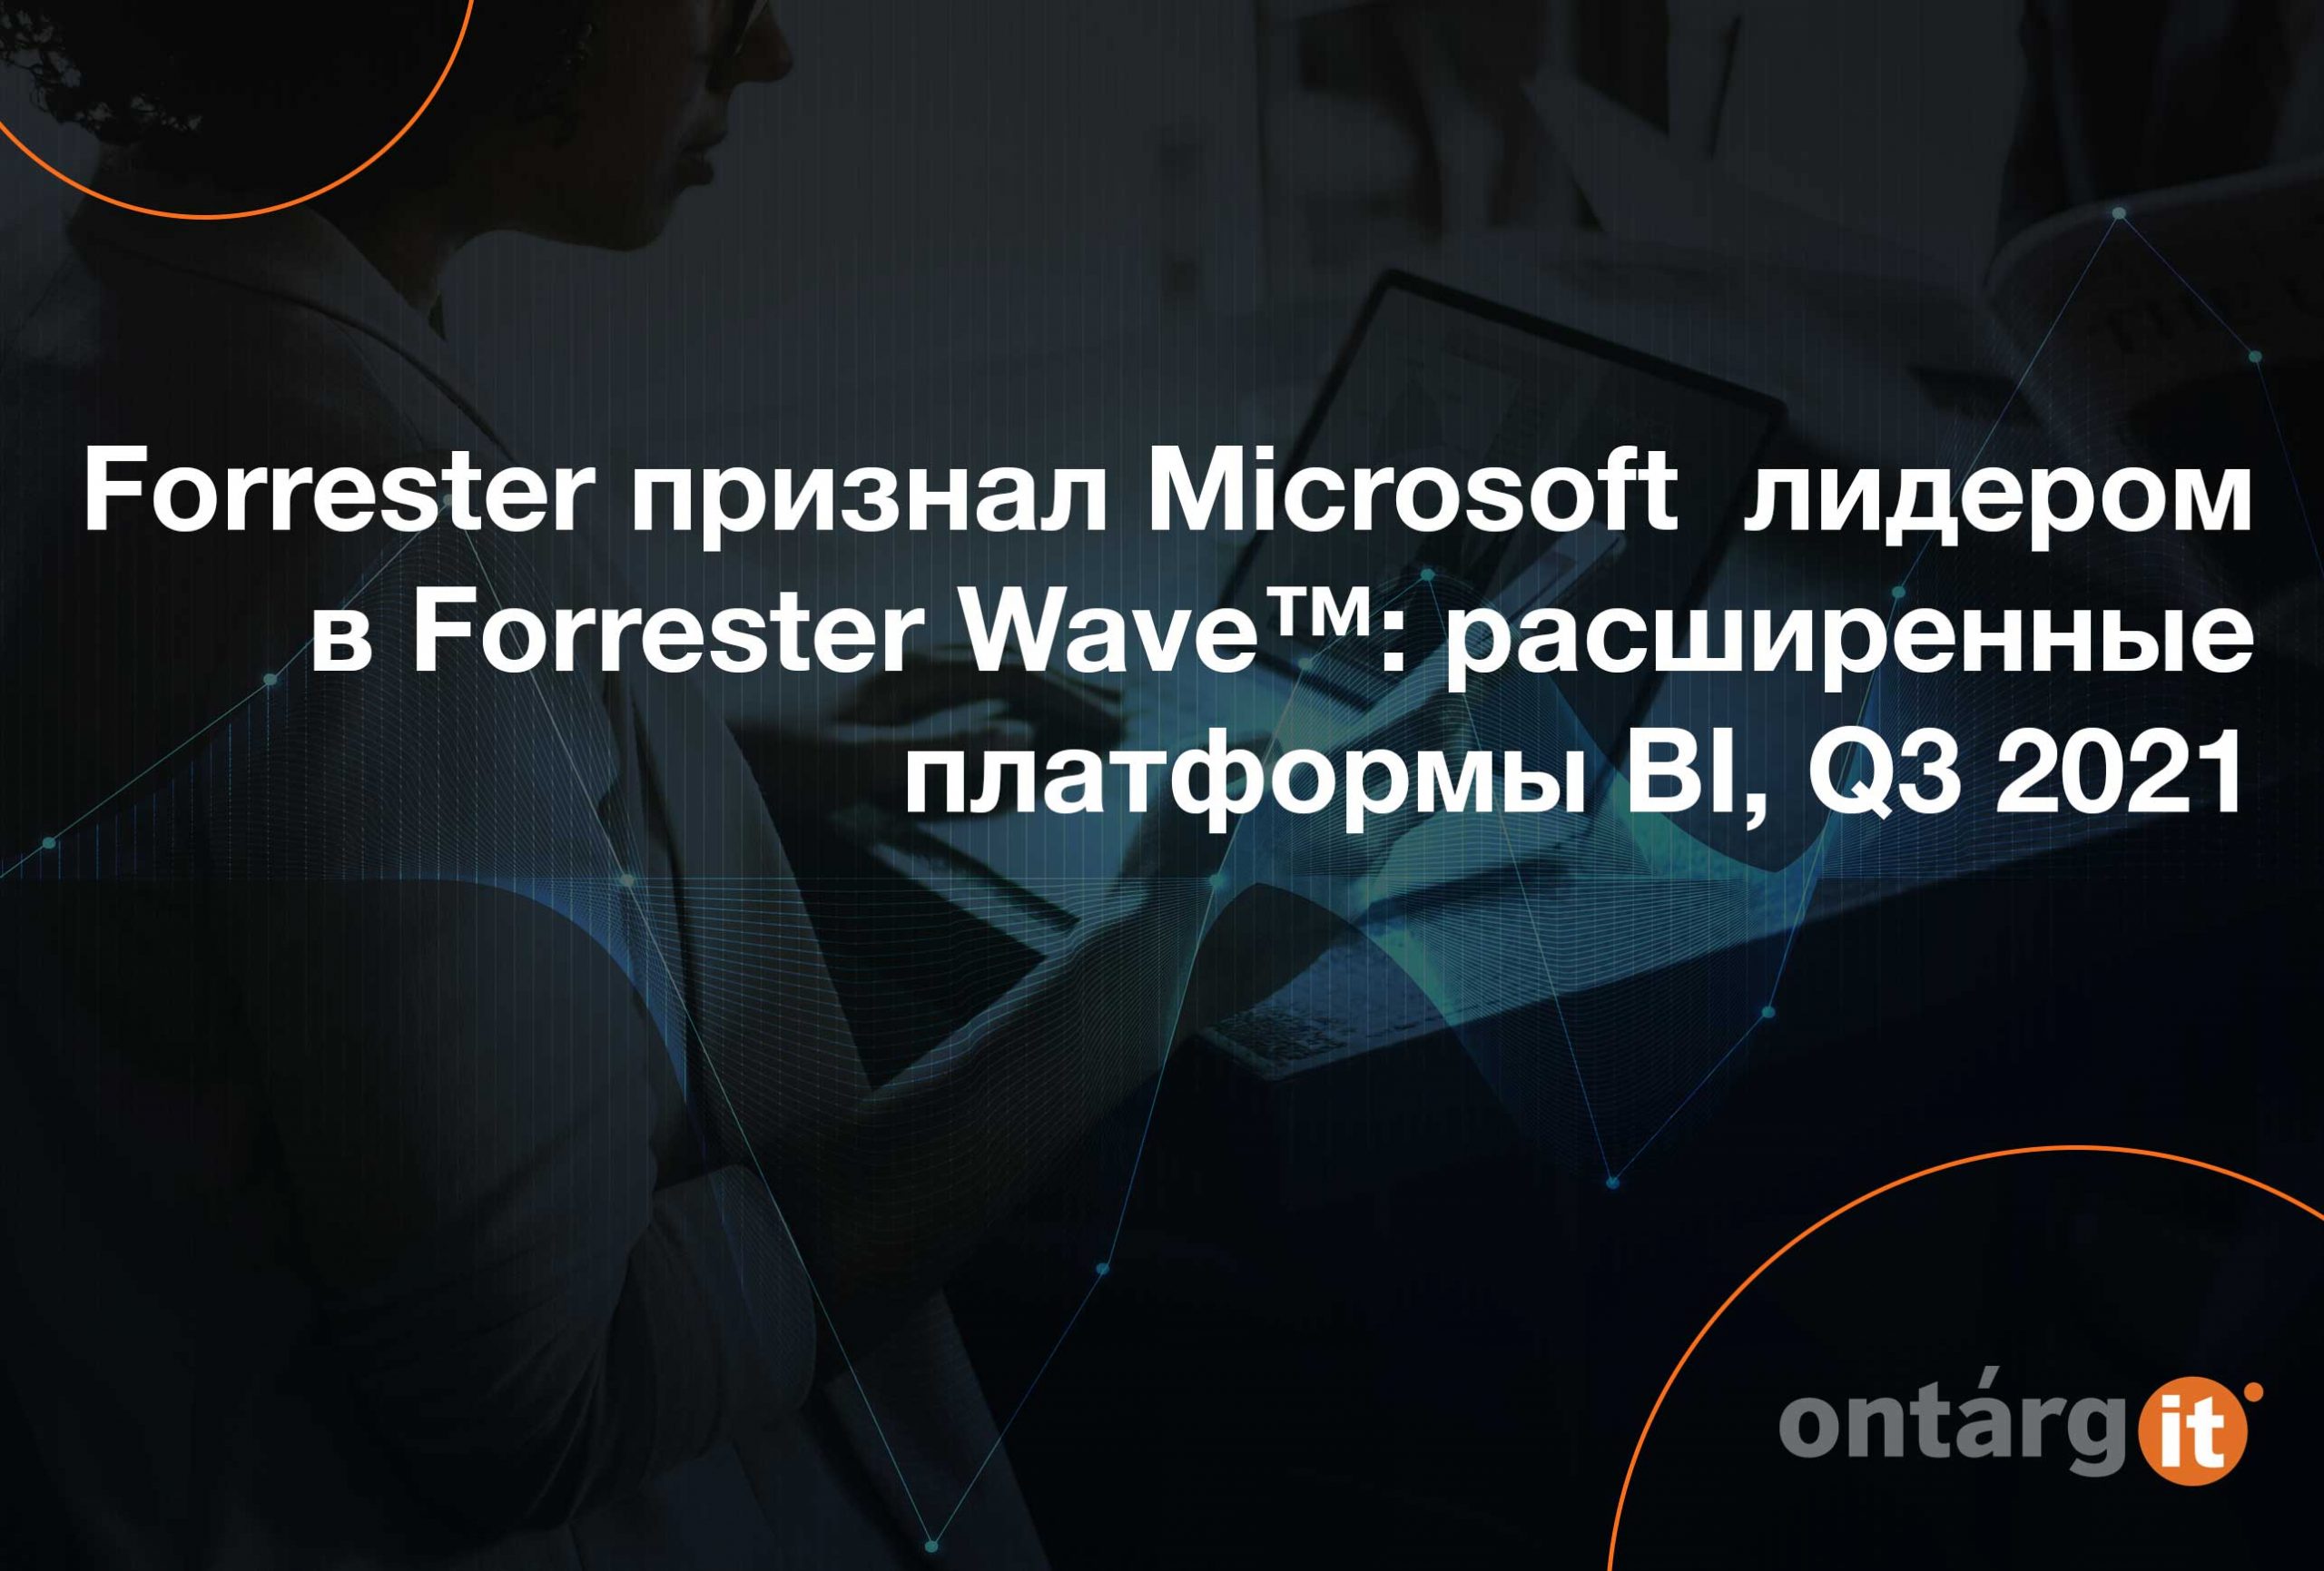 Forrester-признал-Microsoft-лидером-в-Forrester-Wave-расширенные-платформы-BI,-Q3-2021